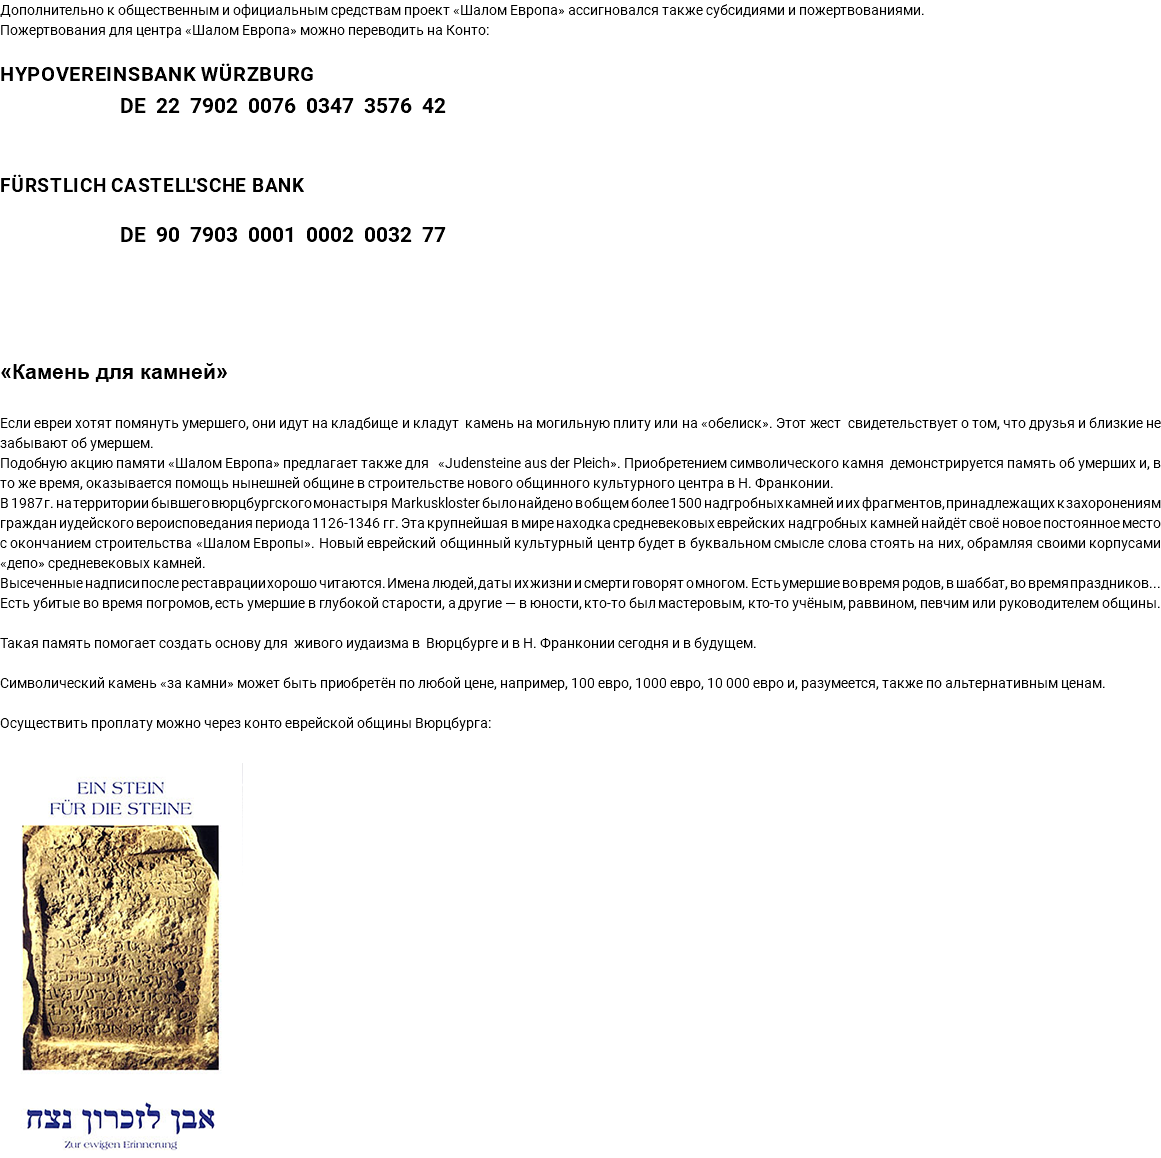 Дополнительно к общественным и официальным средствам проект «Шалом Европа» ассигновался также субсидиями и пожертвованиями. Пожертвования для центра «Шалом Европа» можно переводить на Конто: HypoVereinsbank Würzburg DE 22 7902 0076 0347 3576 42 Fürstlich Castell'sche Bank DE 90 7903 0001 0002 0032 77 «Камень для камней» Если евреи хотят помянуть умершего, они идут на кладбище и кладут камень на могильную плиту или на «обелиск». Этот жест свидетельствует о том, что друзья и близкие не забывают об умершем. Подобную акцию памяти «Шалом Европа» предлагает также для «Judensteine aus der Pleich». Приобретением символического камня демонстрируется память об умерших и, в то же время, оказывается помощь нынешней общине в строительстве нового общинного культурного центра в Н. Франконии. В 1987 г. на территории бывшего вюрцбургского монастыря Markuskloster было найдено в общем более 1500 надгробных камней и их фрагментов, принадлежащих к захоронениям граждан иудейского вероисповедания периода 1126-1346 гг. Эта крупнейшая в мире находка средневековых еврейских надгробных камней найдёт своё новое постоянное место с окончанием строительства «Шалом Европы». Новый еврейский общинный культурный центр будет в буквальном смысле слова стоять на них, обрамляя своими корпусами «депо» средневековых камней. Высеченные надписи после реставрации хорошо читаются. Имена людей, даты их жизни и смерти говорят о многом. Есть умершие во время родов, в шаббат, во время праздников... Есть убитые во время погромов, есть умершие в глубокой старости, а другие — в юности, кто-то был мастеровым, кто-то учёным, раввином, певчим или руководителем общины. Такая память помогает создать основу для живого иудаизма в Вюрцбурге и в Н. Франконии сегодня и в будущем. Символический камень «за камни» может быть приобретён по любой цене, например, 100 евро, 1000 евро, 10 000 евро и, разумеется, также по альтернативным ценам. Осуществить проплату можно через конто еврейской общины Вюрцбурга: ﷯ 